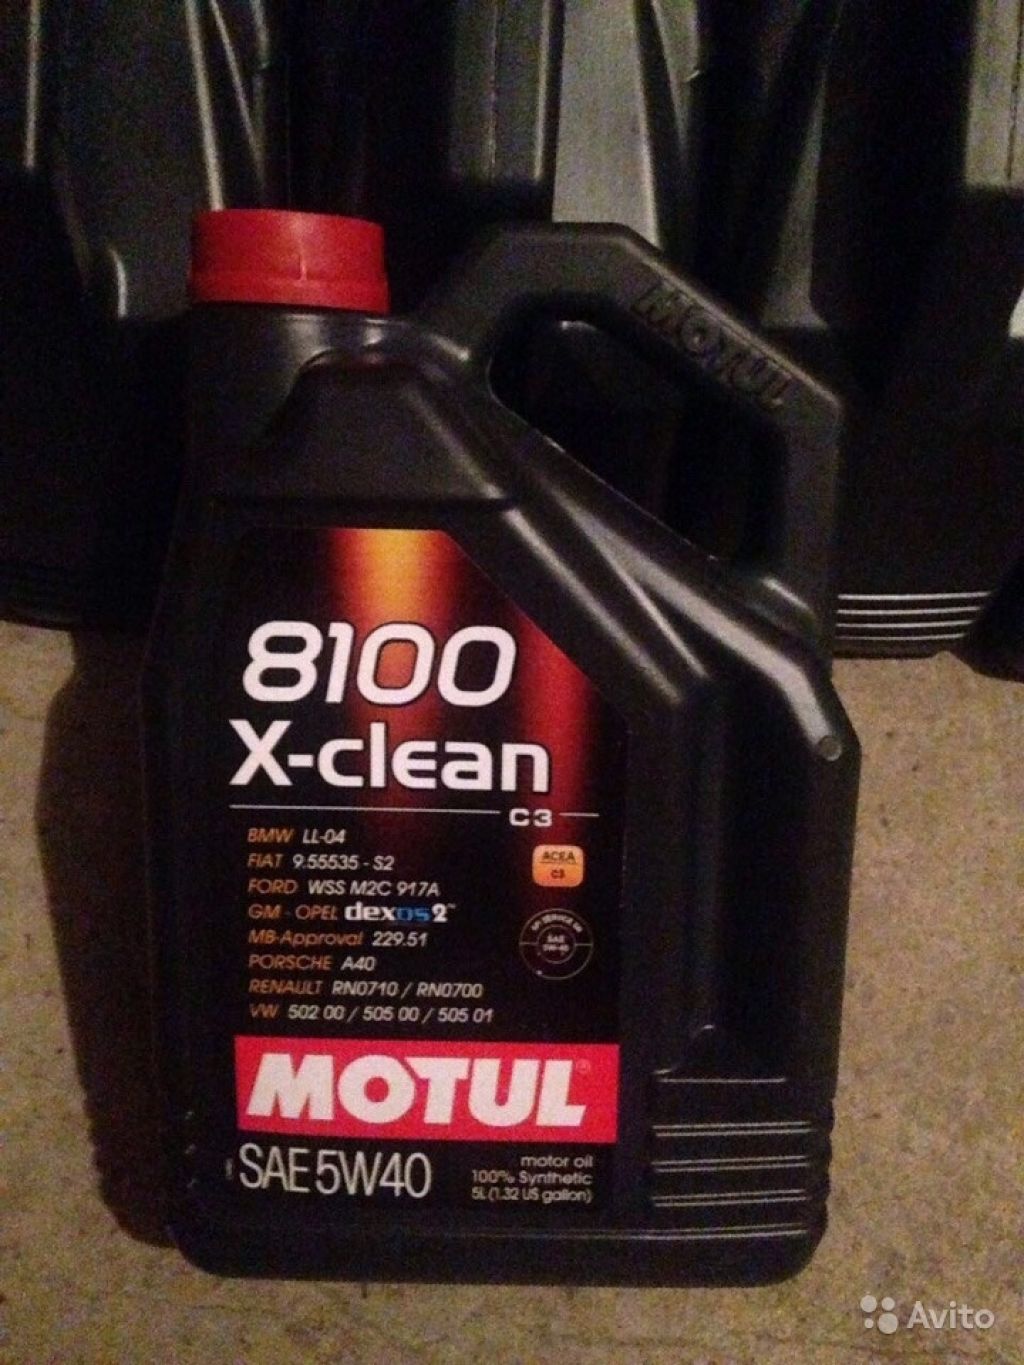 Масло 8100 x clean 5w. Motul 8100 x-clean 5w40. 8100 X-clean SAE 5w 40. Motul x-clean 5w40. Motul 8100 x-clean 5w40 4л.